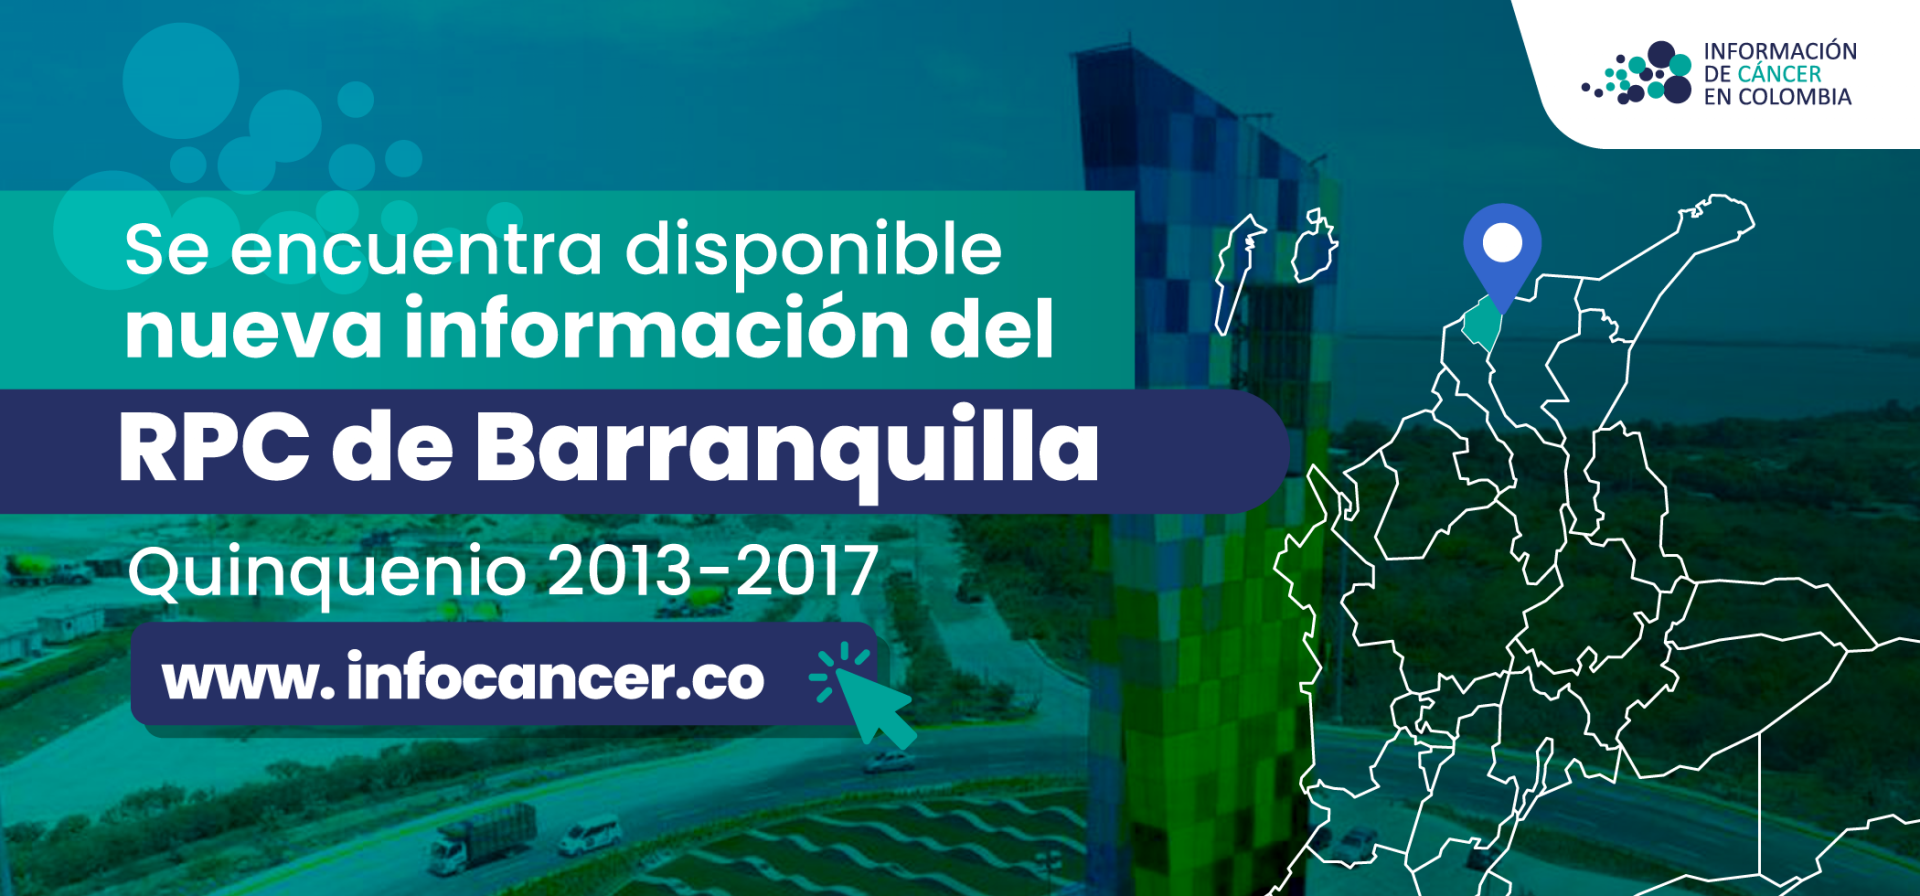 Imagen de RPC Barranquilla 2013-2017